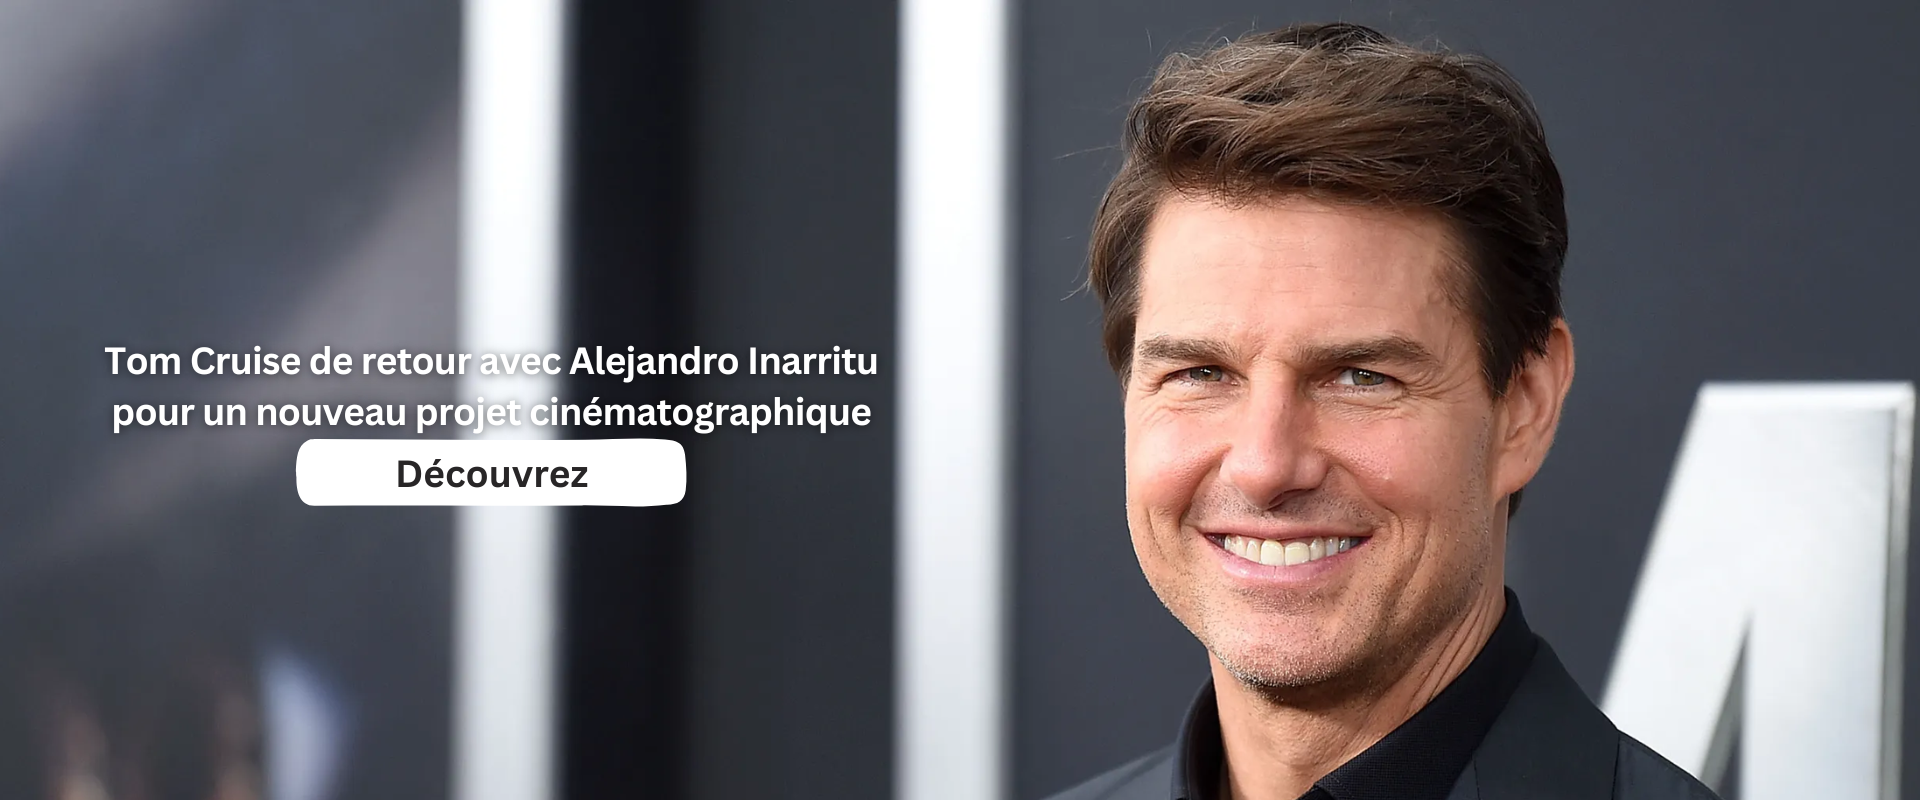 Tom Cruise de retour avec Alejandro Inarritu pour un nouveau projet cinématographique